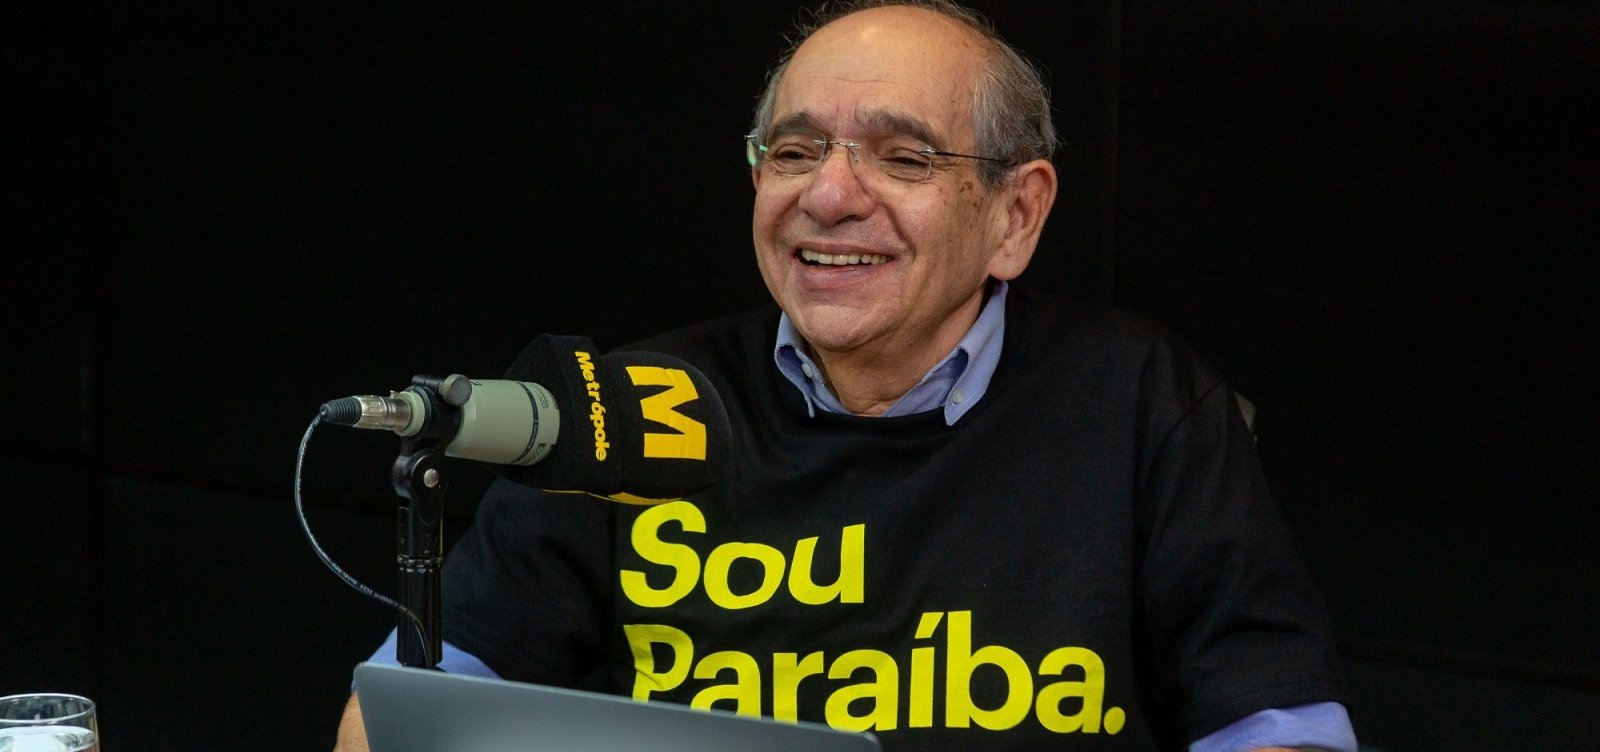 MK diz ter 'orgulho de ser paraíba' e lamenta 'mesquinharia' do governo Bolsonaro; ouça